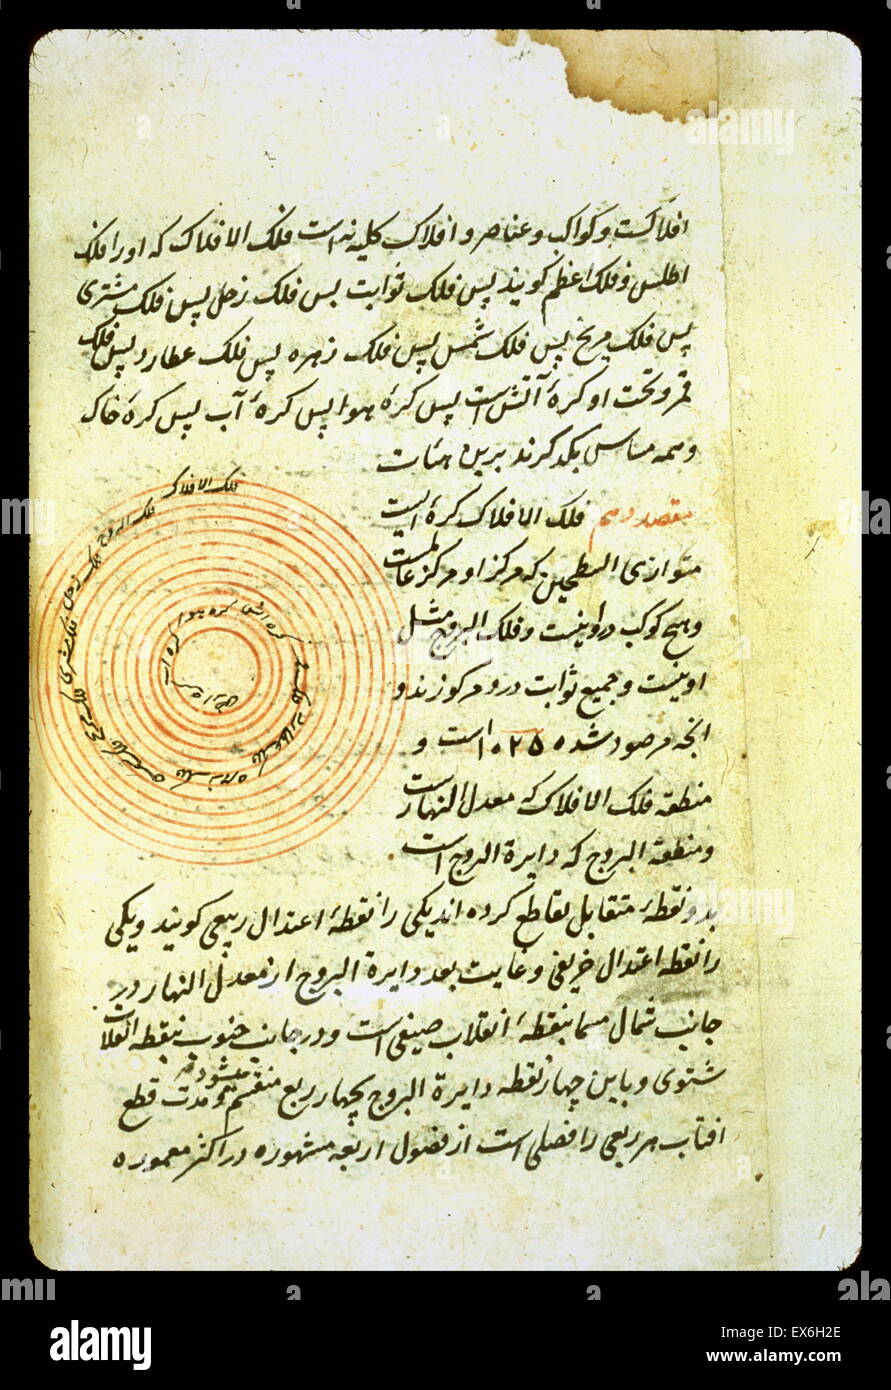 Diagramma delle sfere celesti in un anonimo e senza titolo persiano di trattato di astronomia. La copia è stata completata il 20 Dhu al-Qa'dah 959 (= 7 novembre 1552) da ?adr al-D?n al-muta?abbib [Medico curante]. Foto Stock